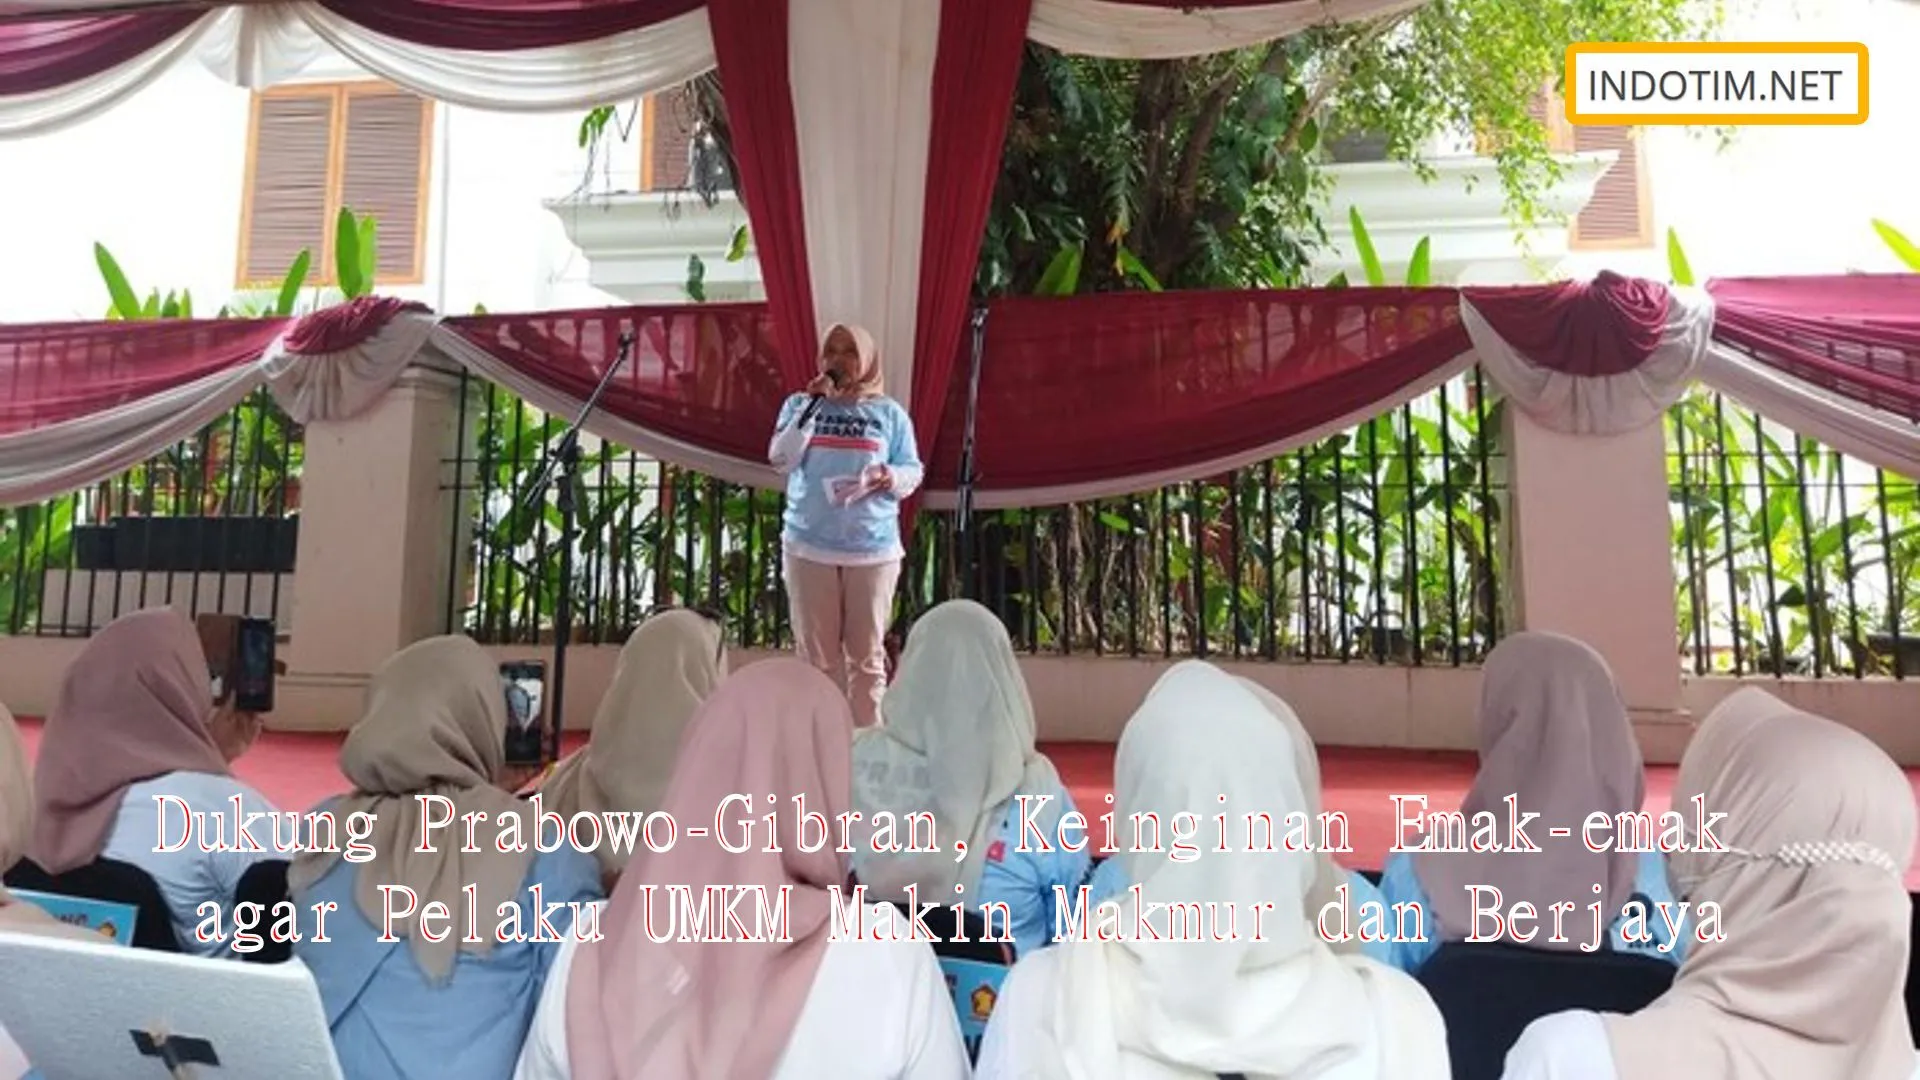 Dukung Prabowo-Gibran, Keinginan Emak-emak agar Pelaku UMKM Makin Makmur dan Berjaya